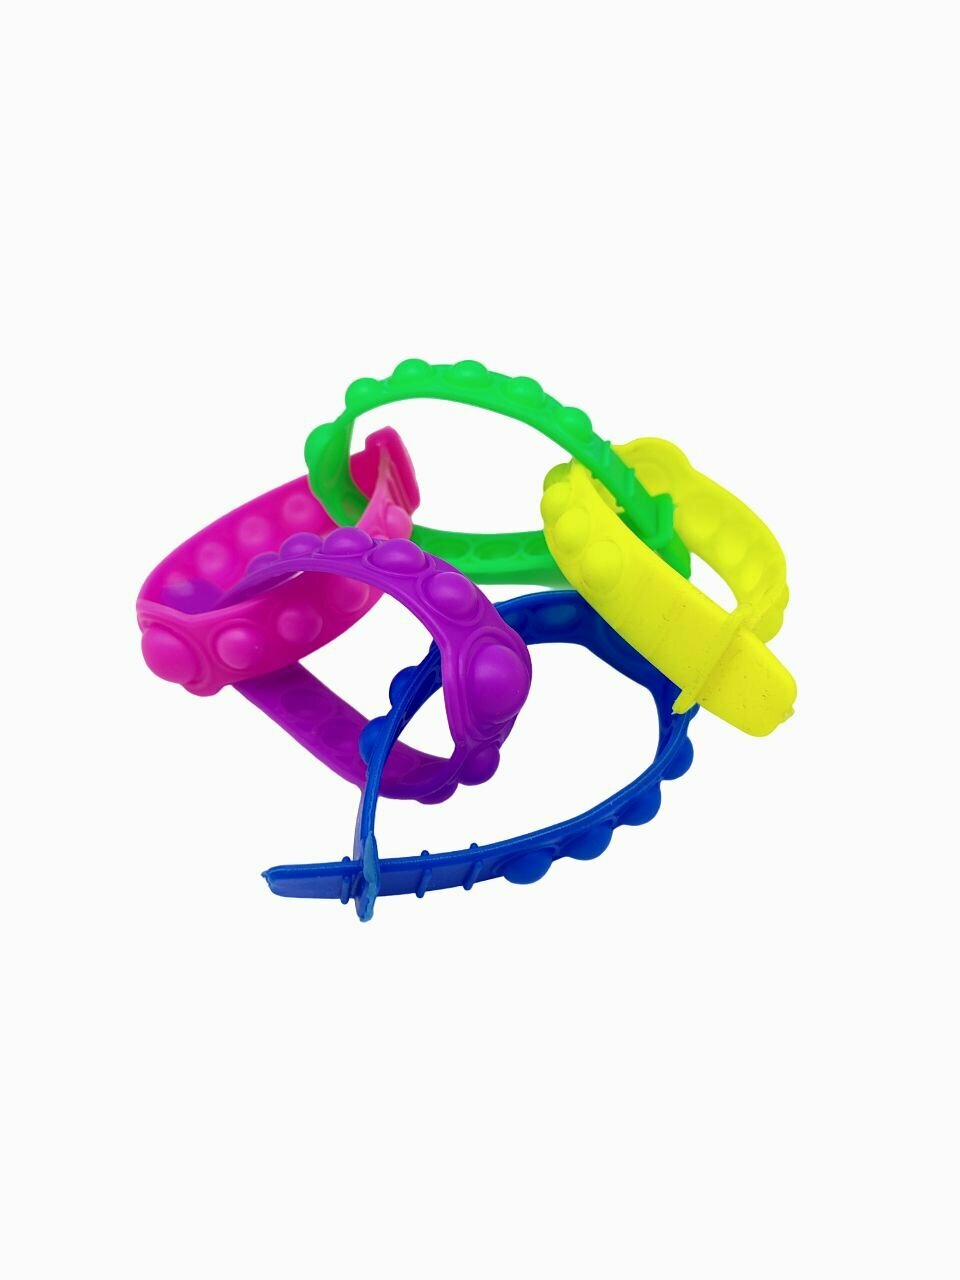 Игрушка-антистресс комплект браслетов ПОП-ИТ разноцветный MIX 5 штук